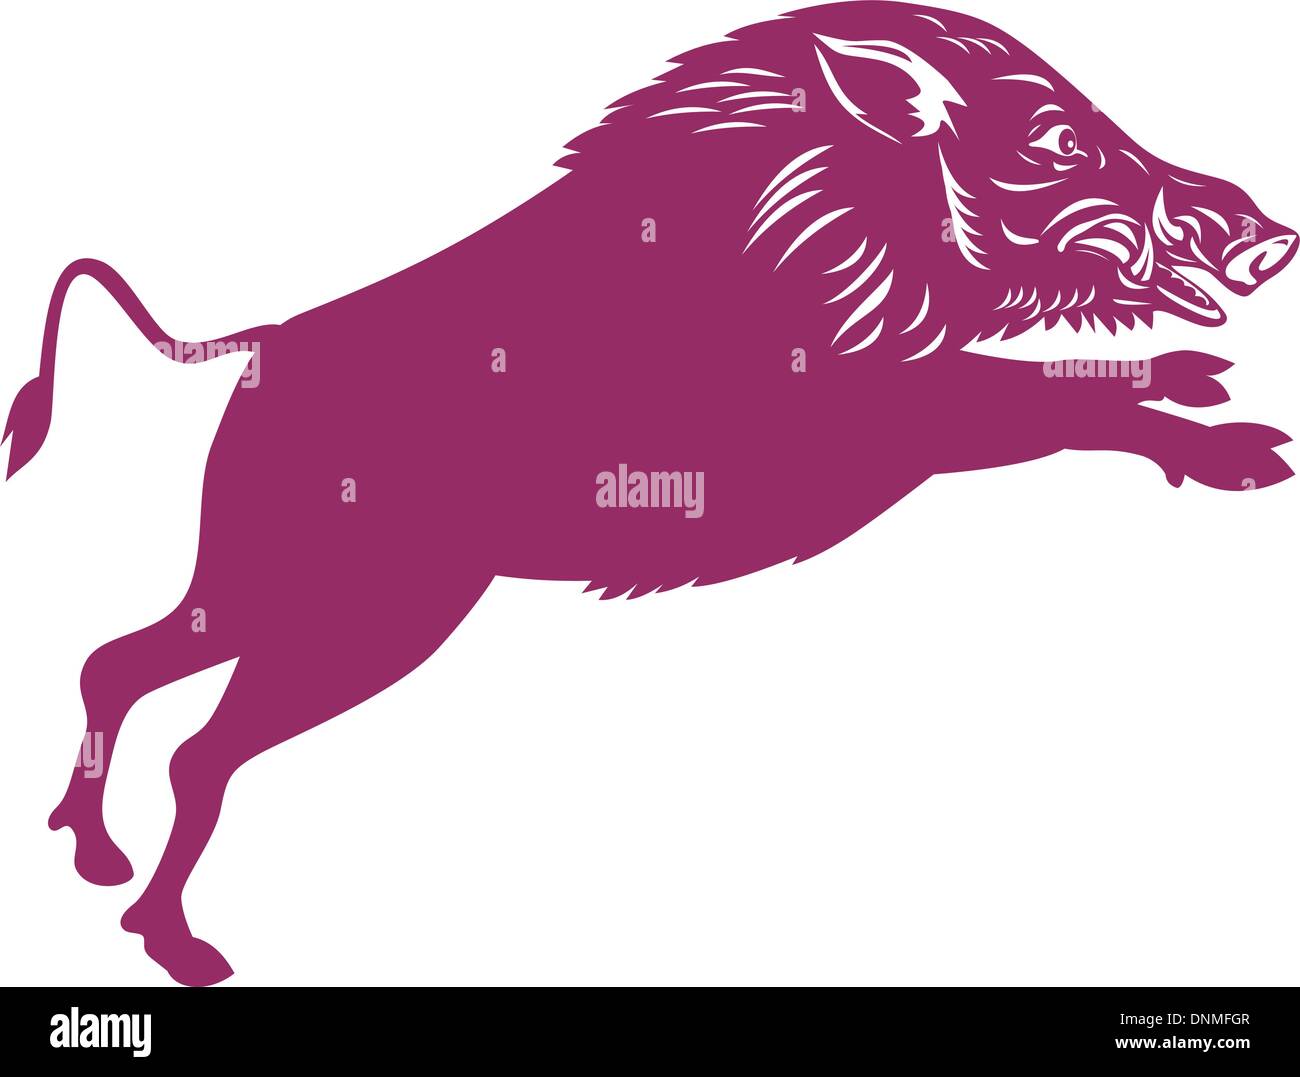 Illustrazione di un maiale selvatico cinghiale razorback su sfondo isolato fatto in stile retrò. Illustrazione Vettoriale